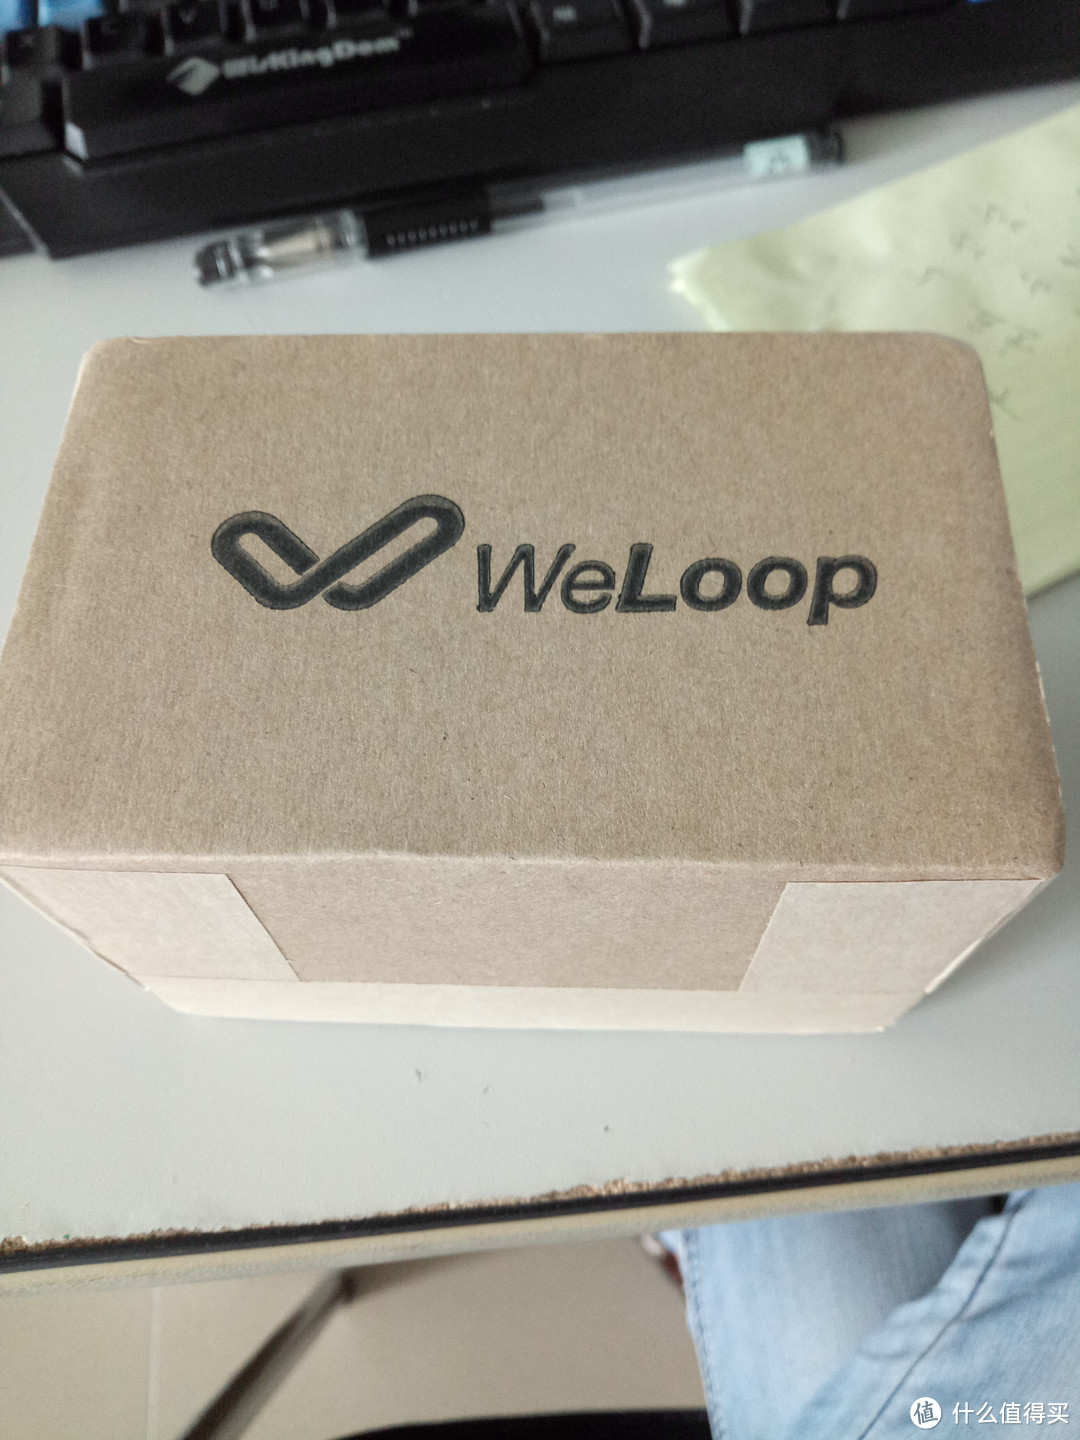 #原创新人#Weloop 唯乐 now2 智能手环 入手7天使用体验